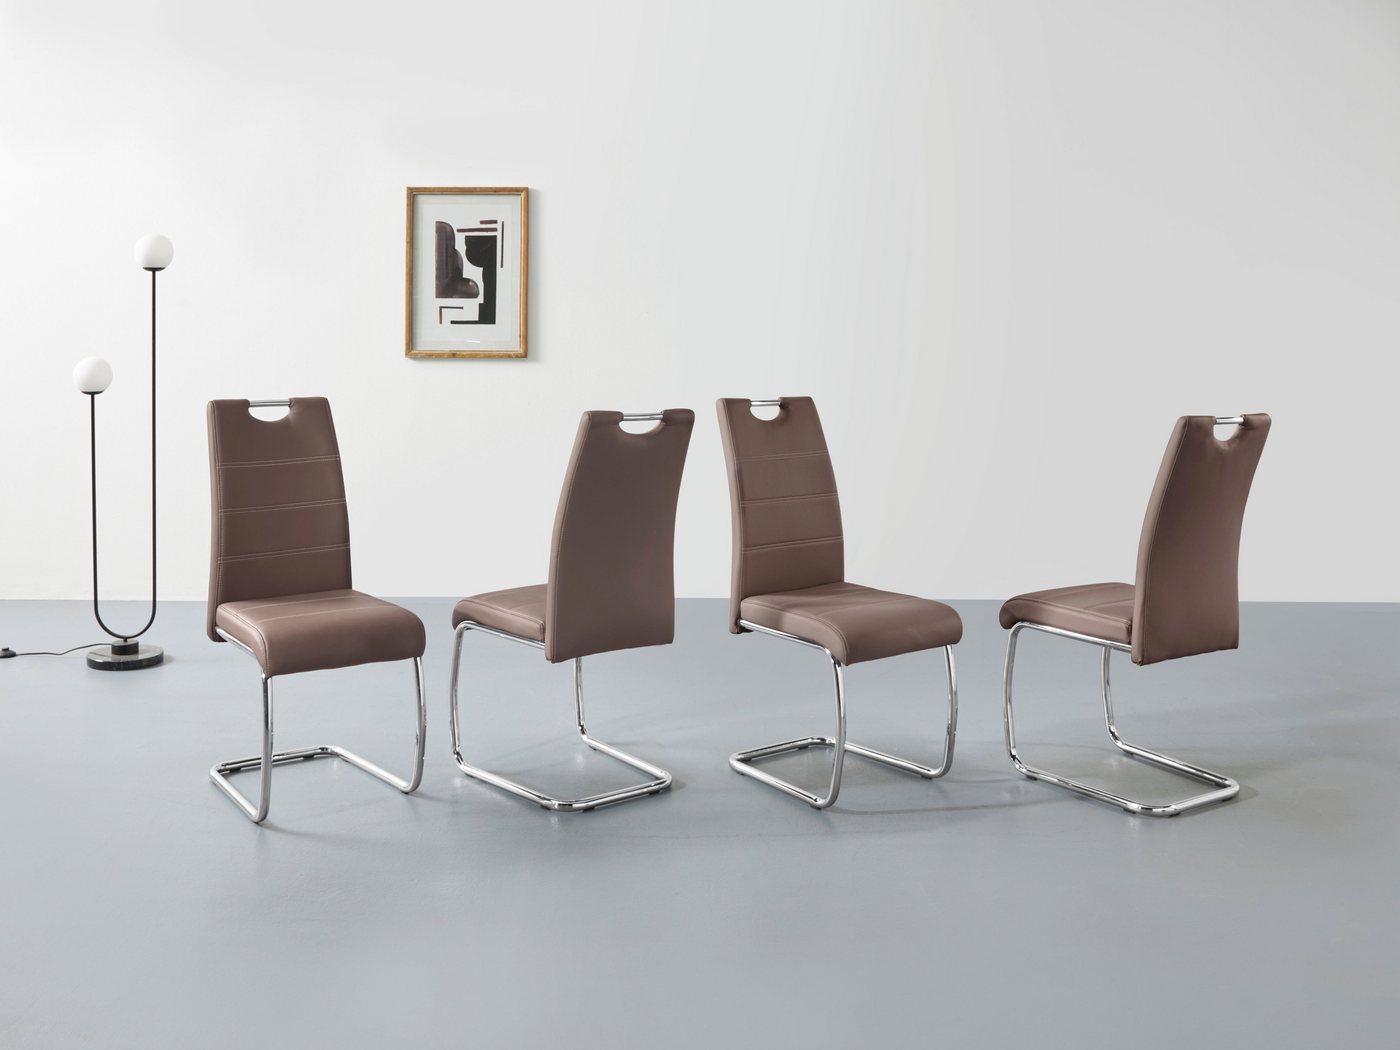 Braun | Möbel von HELA. Günstig online kaufen bei Möbel &